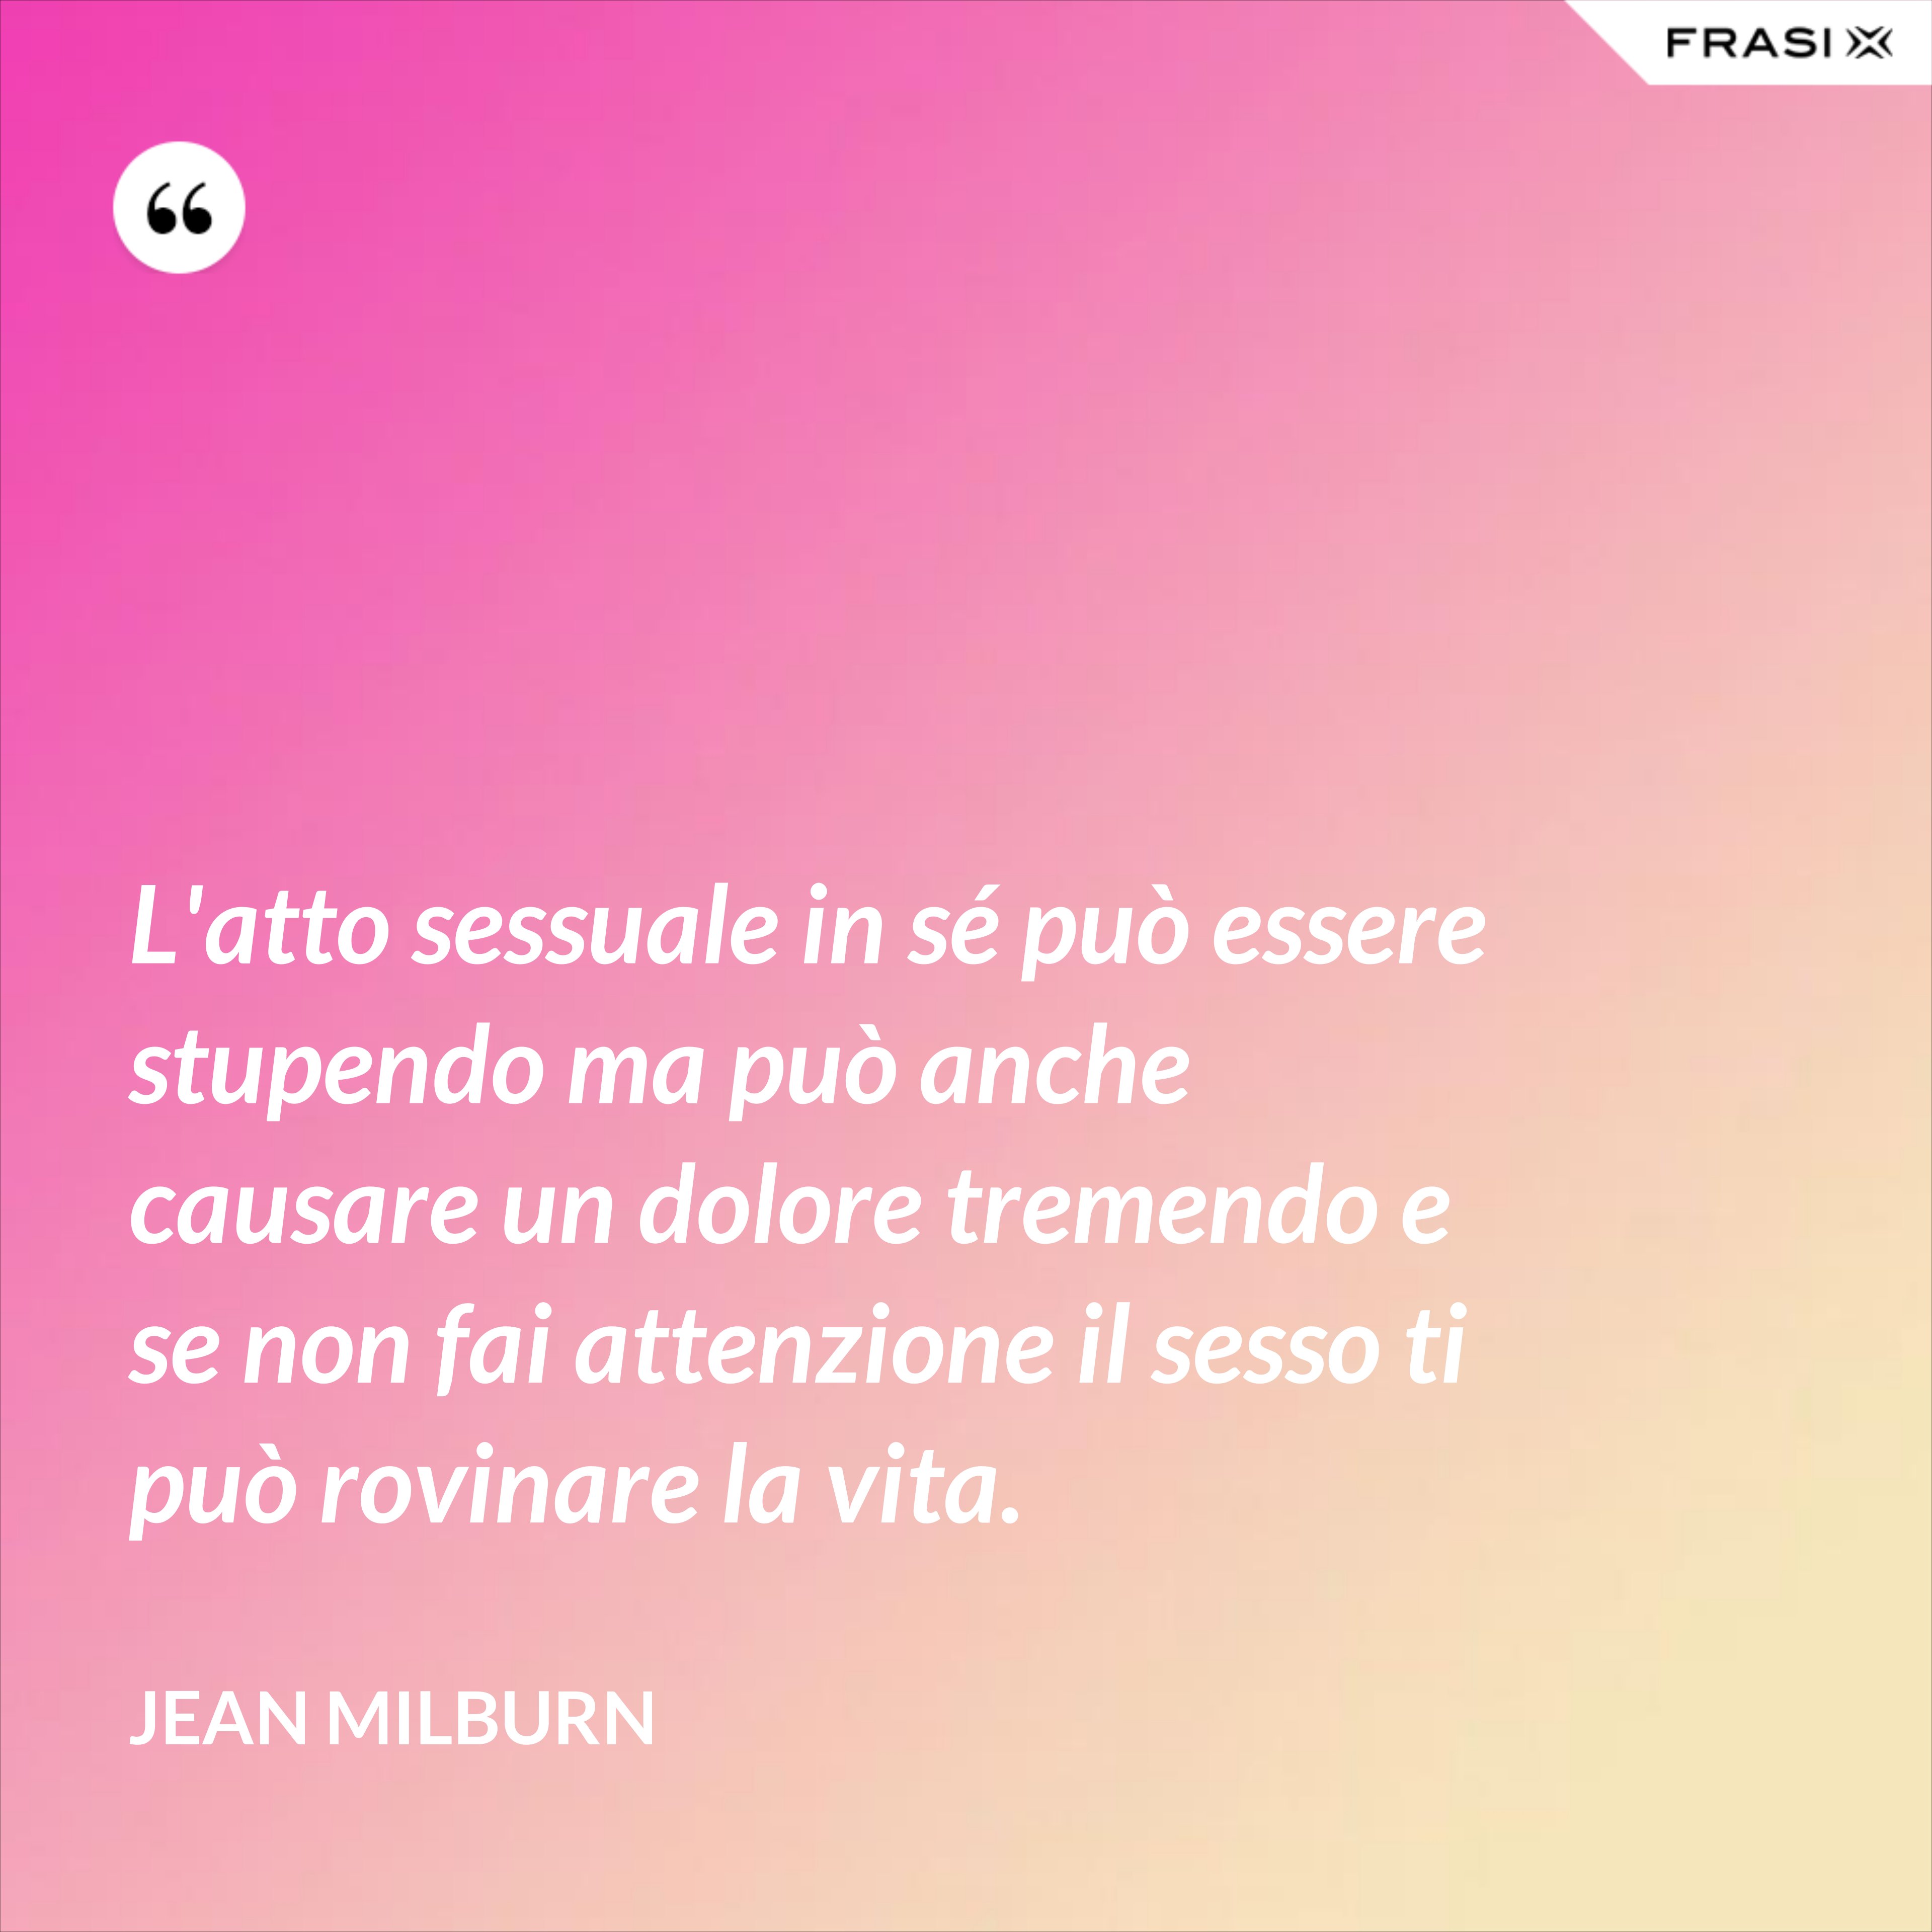 L'atto sessuale in sé può essere stupendo ma può anche causare un dolore tremendo e se non fai attenzione il sesso ti può rovinare la vita. - Jean Milburn